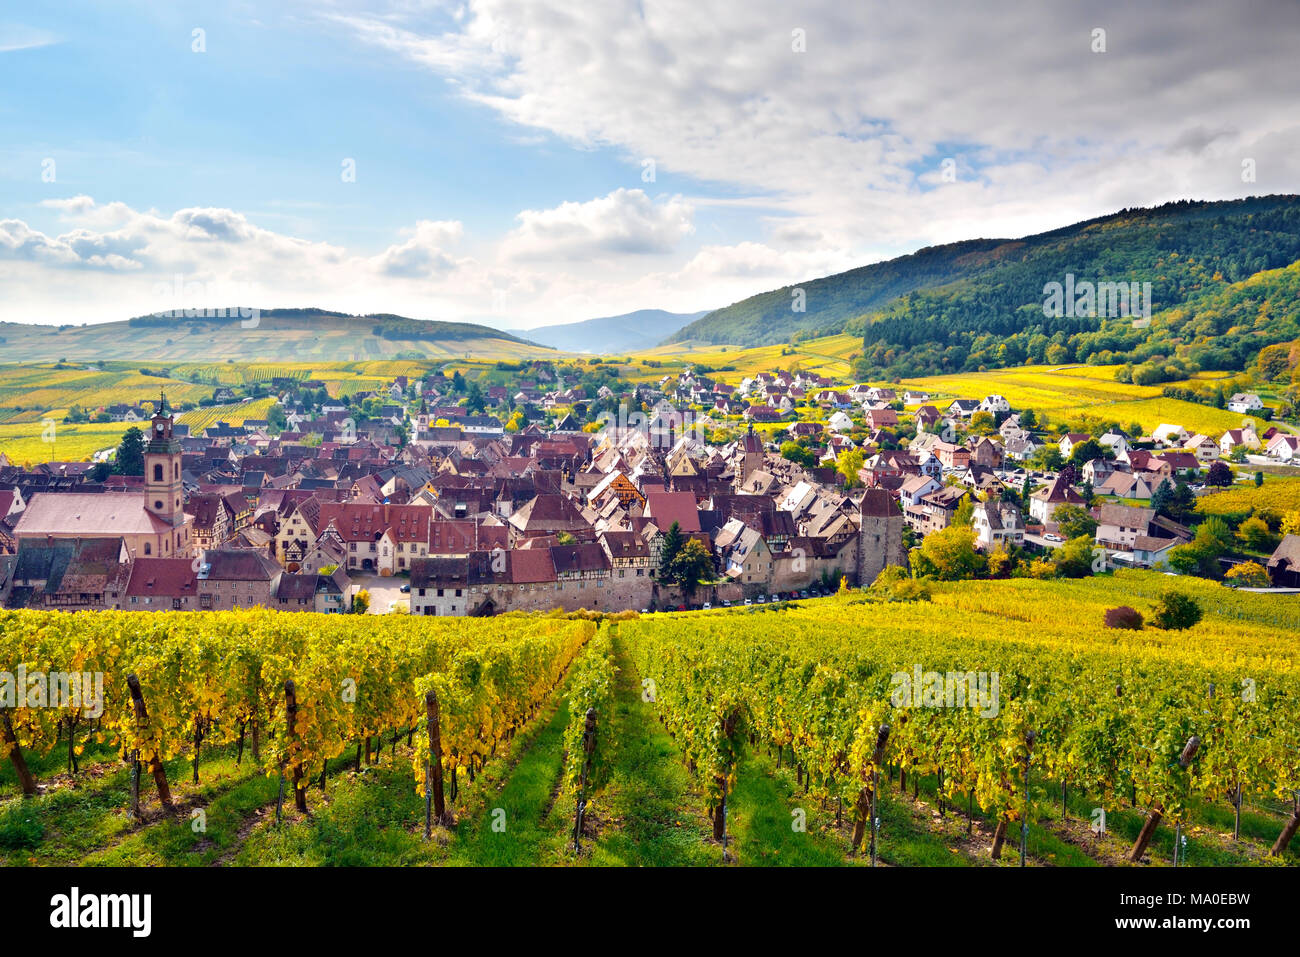 Une vue sur le vin, Riquewihr, dans la région d'Alsace, France. Banque D'Images